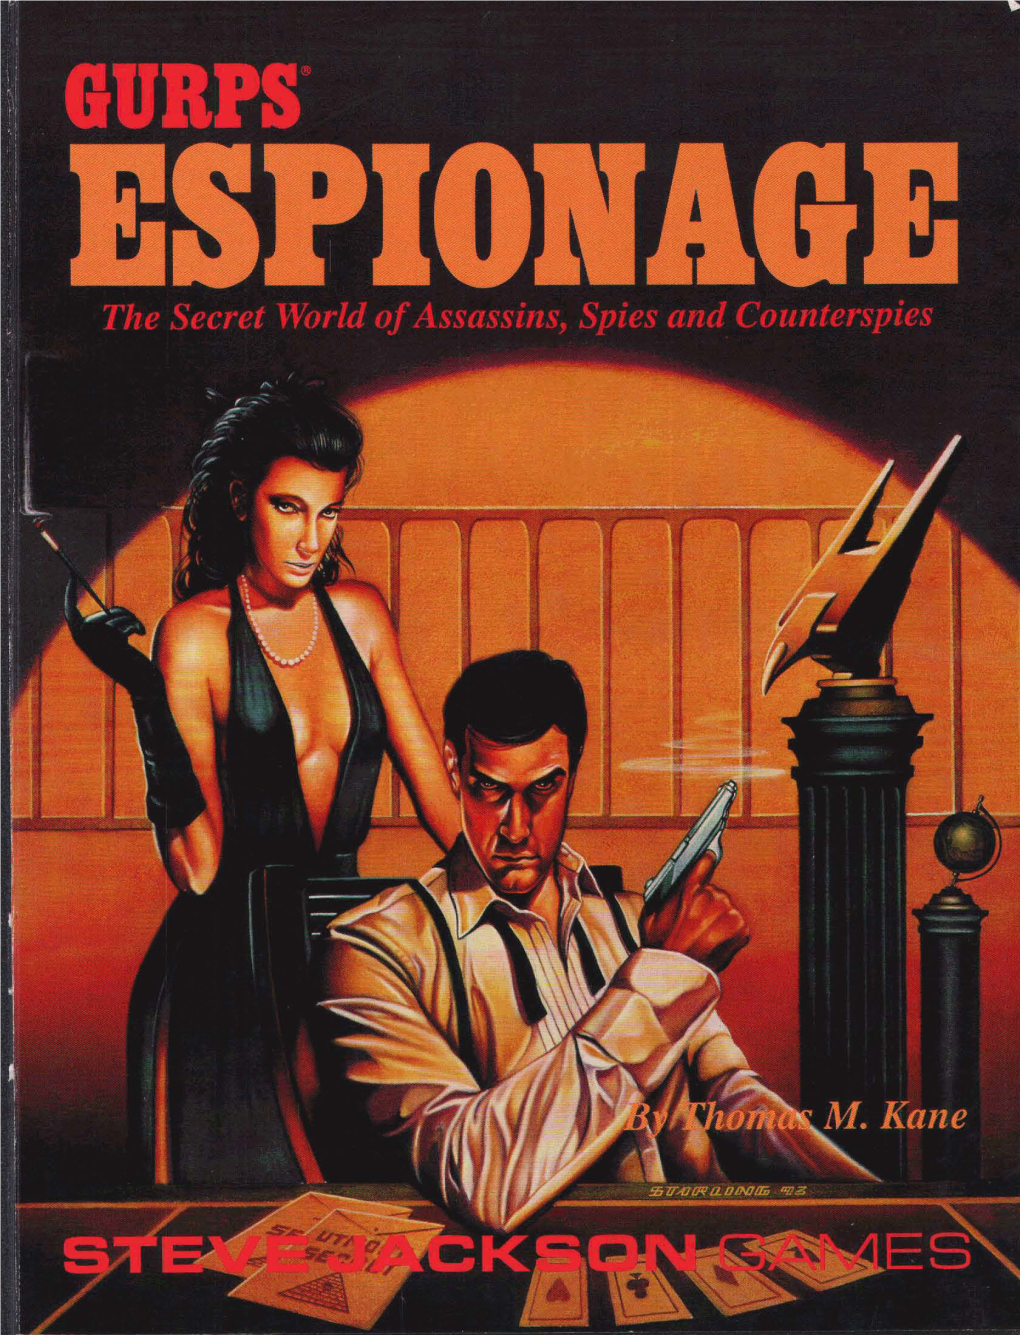 GURPS Classic Espionage